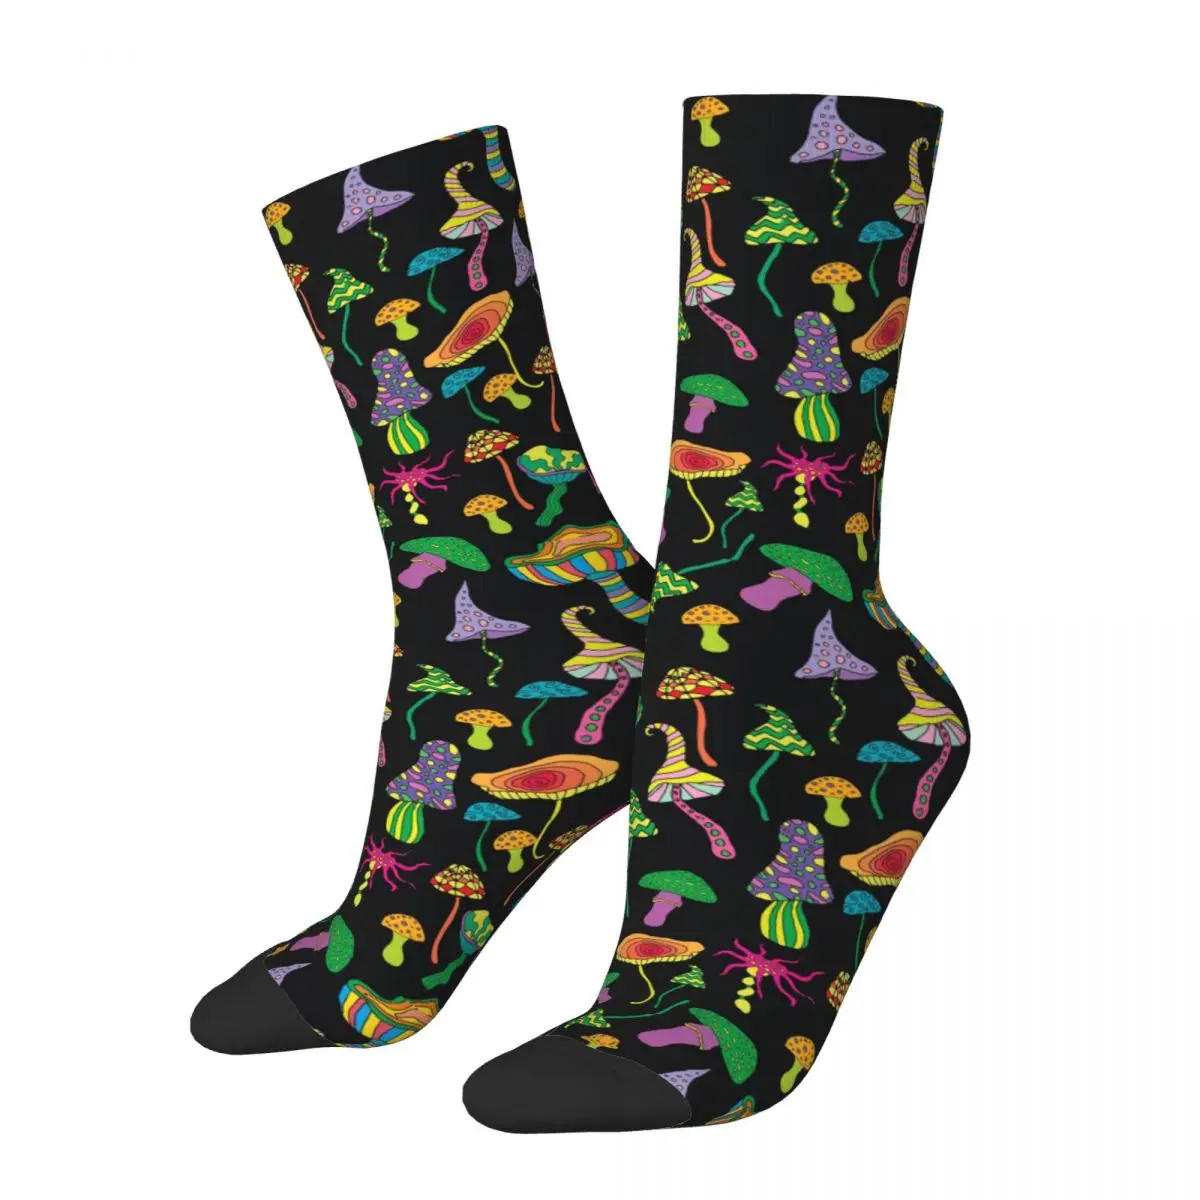 

Счастливые забавные мужские носки Харадзюку Волшебные психоделические носки с грибами женские носки с фантастическим графическим рисунком весна лето осень зима